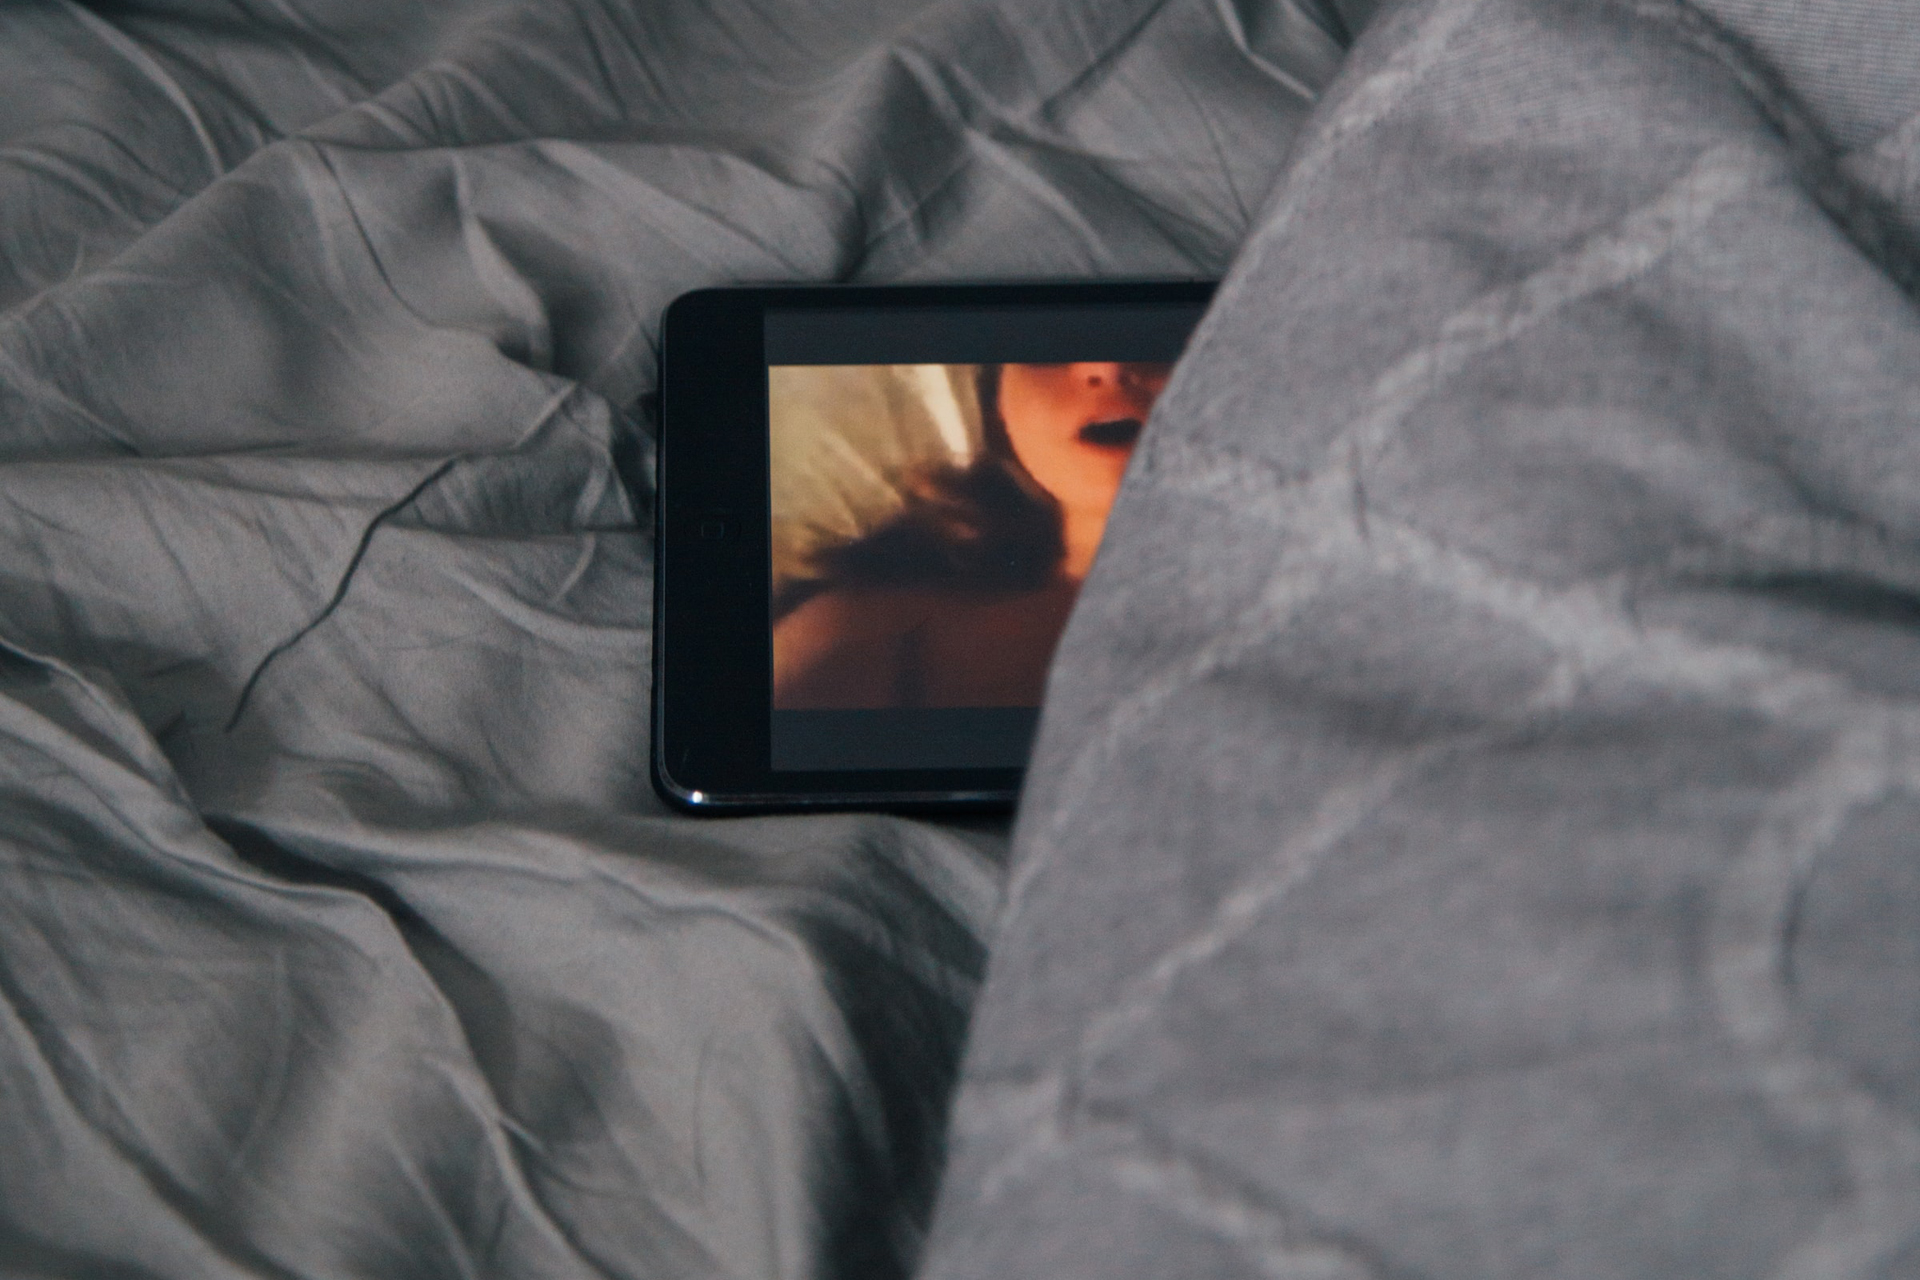 Smartphone liegt im Bett und zeigt einen Porno